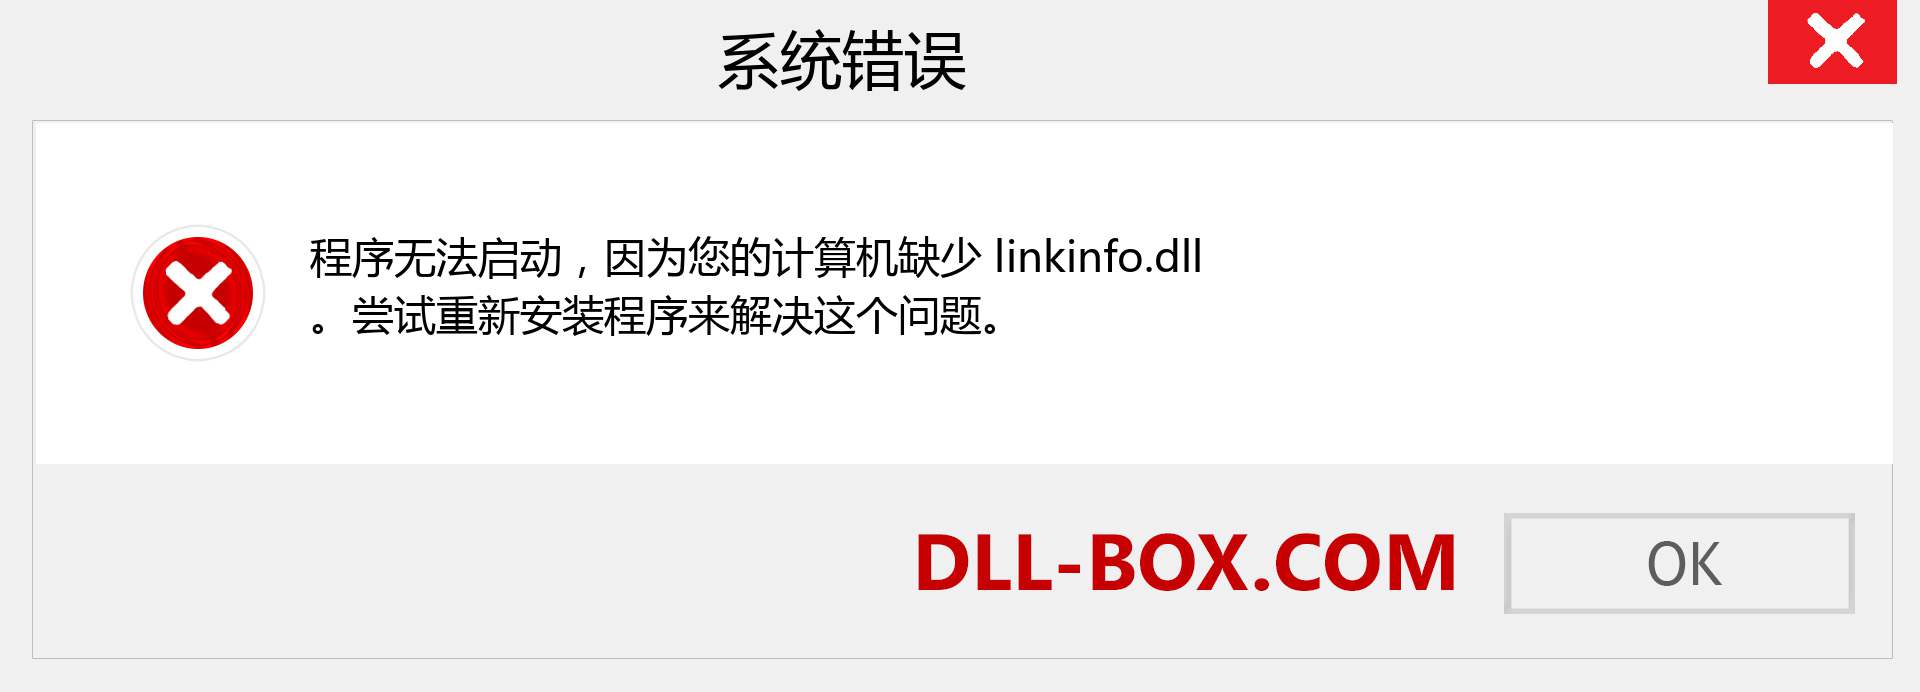 linkinfo.dll 文件丢失？。 适用于 Windows 7、8、10 的下载 - 修复 Windows、照片、图像上的 linkinfo dll 丢失错误